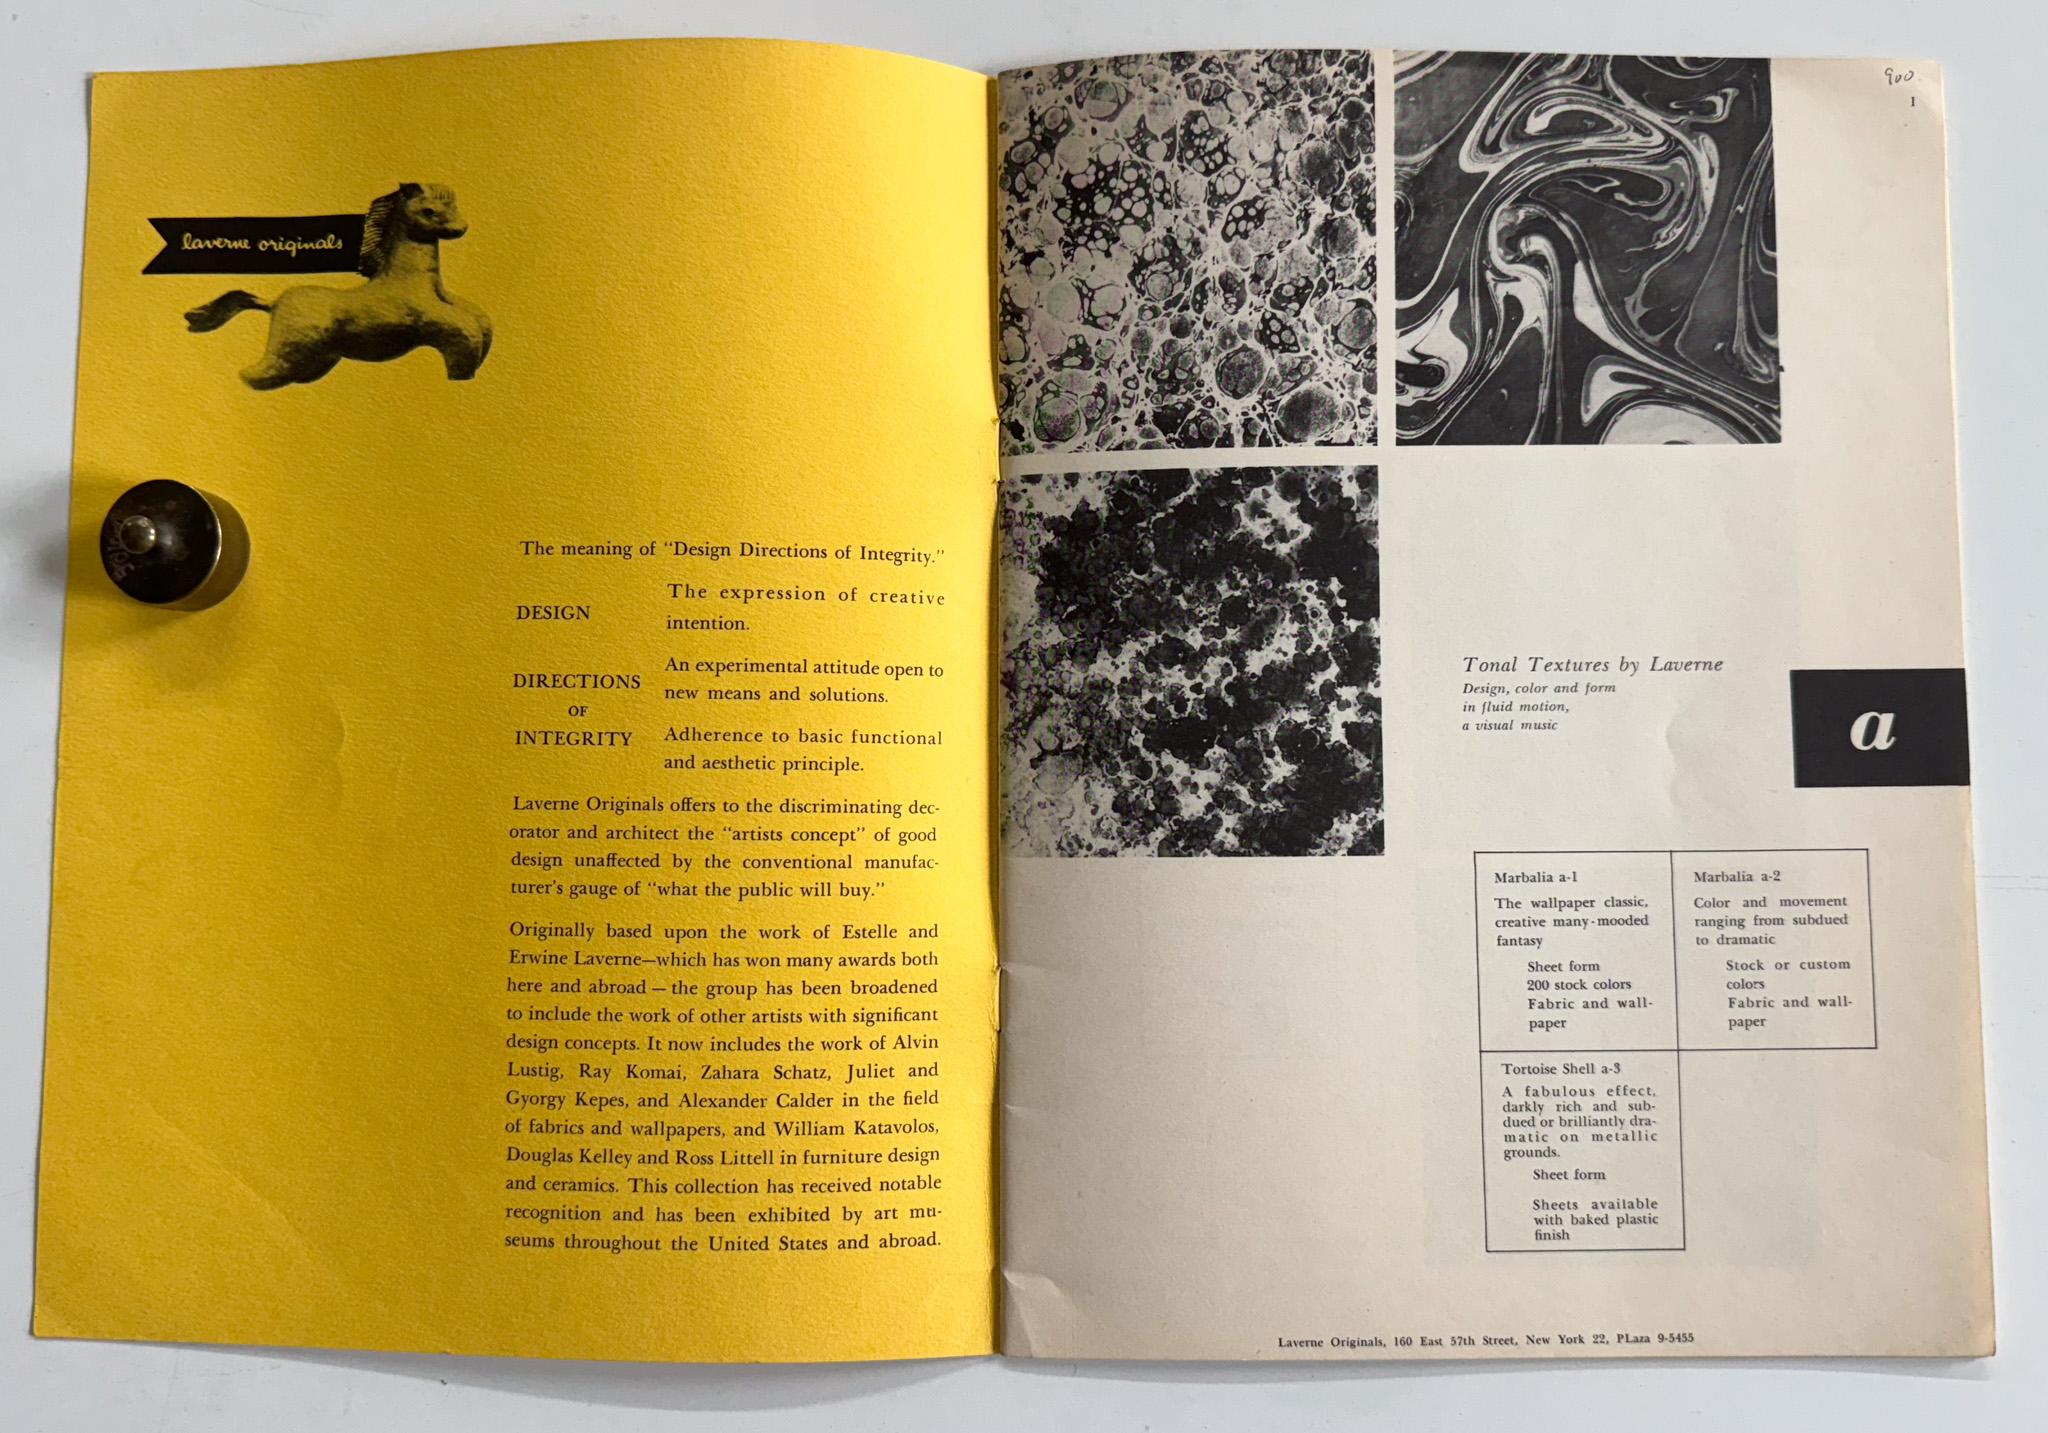 Premier catalogue de Laverne Originals, la société de design moderne fondée par Estelle et Erwine Laverne en 1938. Après des débuts modestes dans la production de papiers peints et de textiles, Laverne (qui deviendra par la suite Laverne